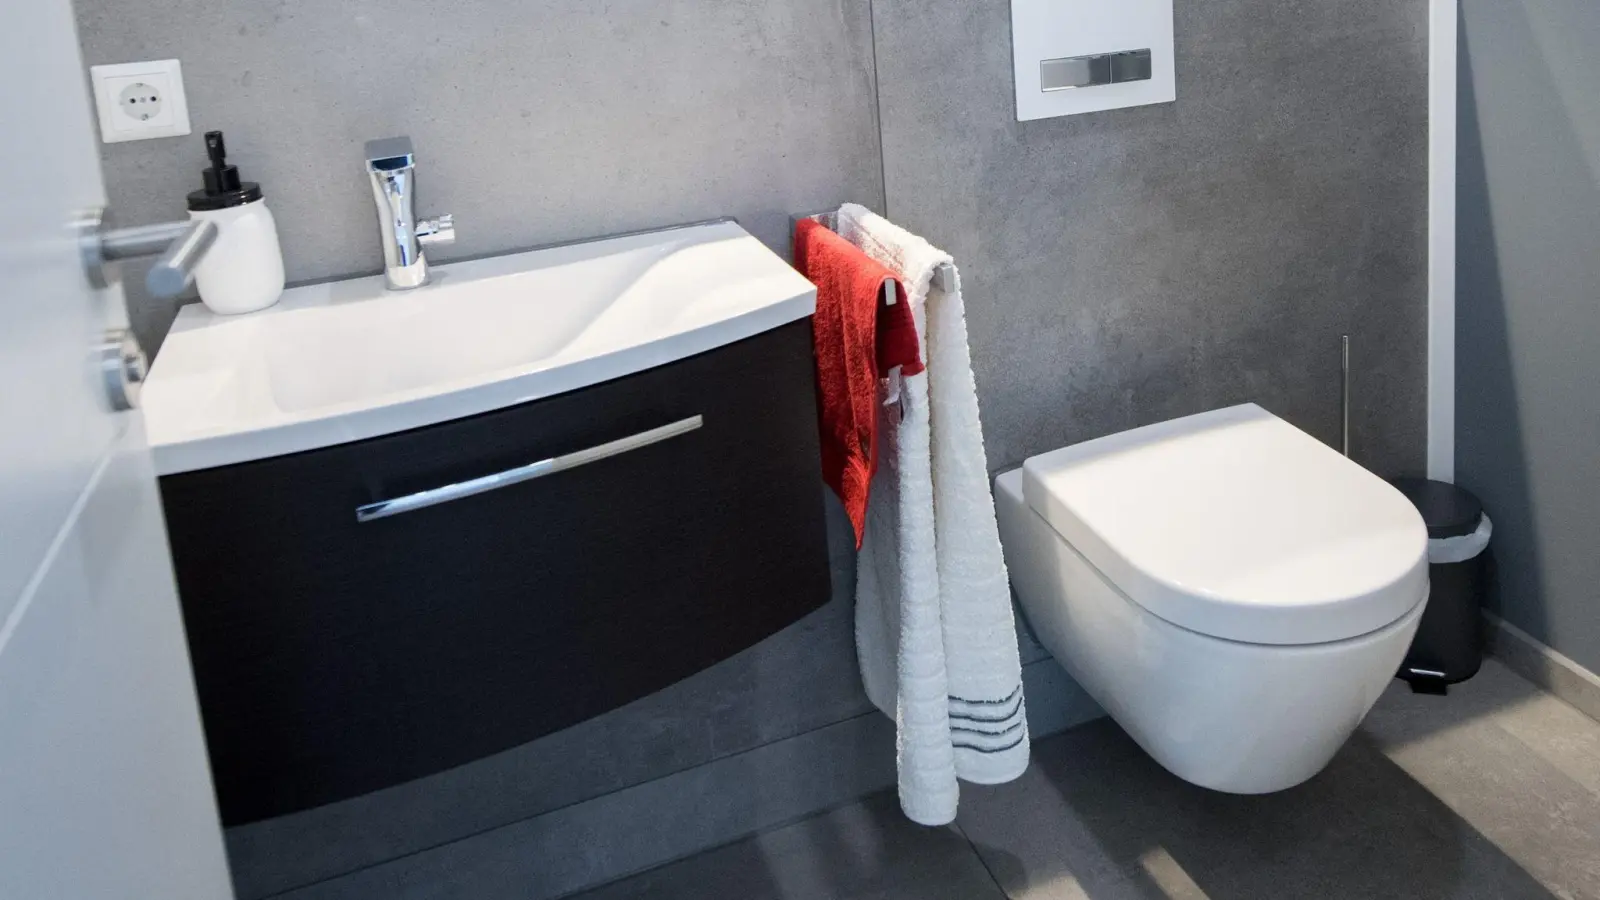 Moderne Wasserkästen an Toiletten sind um einiges sparsamer als ältere Modelle. (Foto: Andrea Warnecke/dpa-tmn)